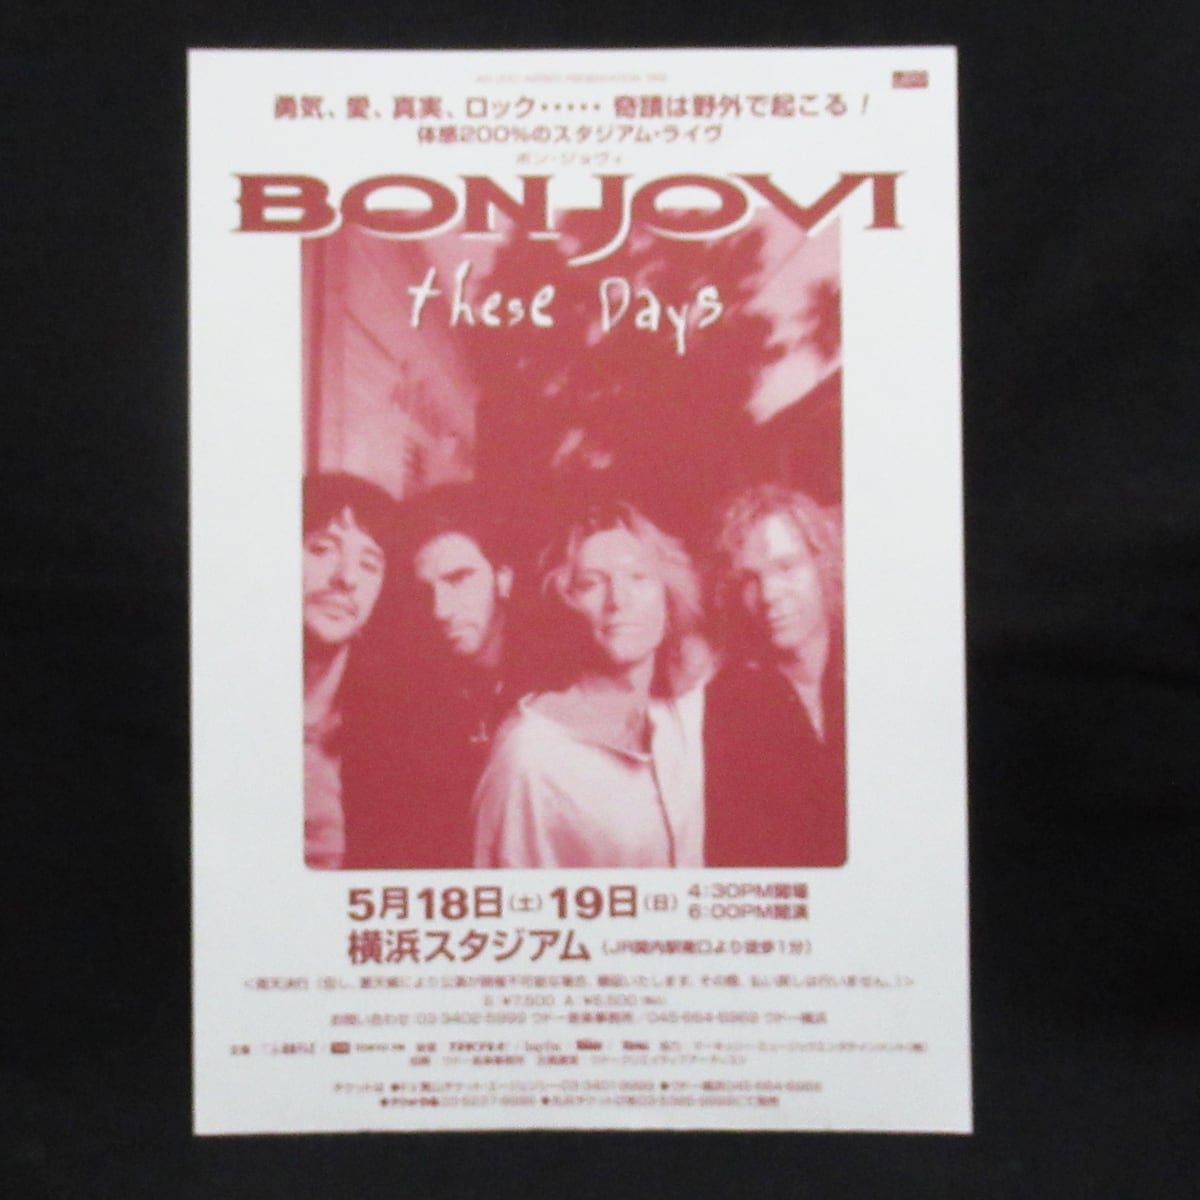 ボン・ジョビ BON JOVI 1996 コンサート・フライヤー【VINTAGE